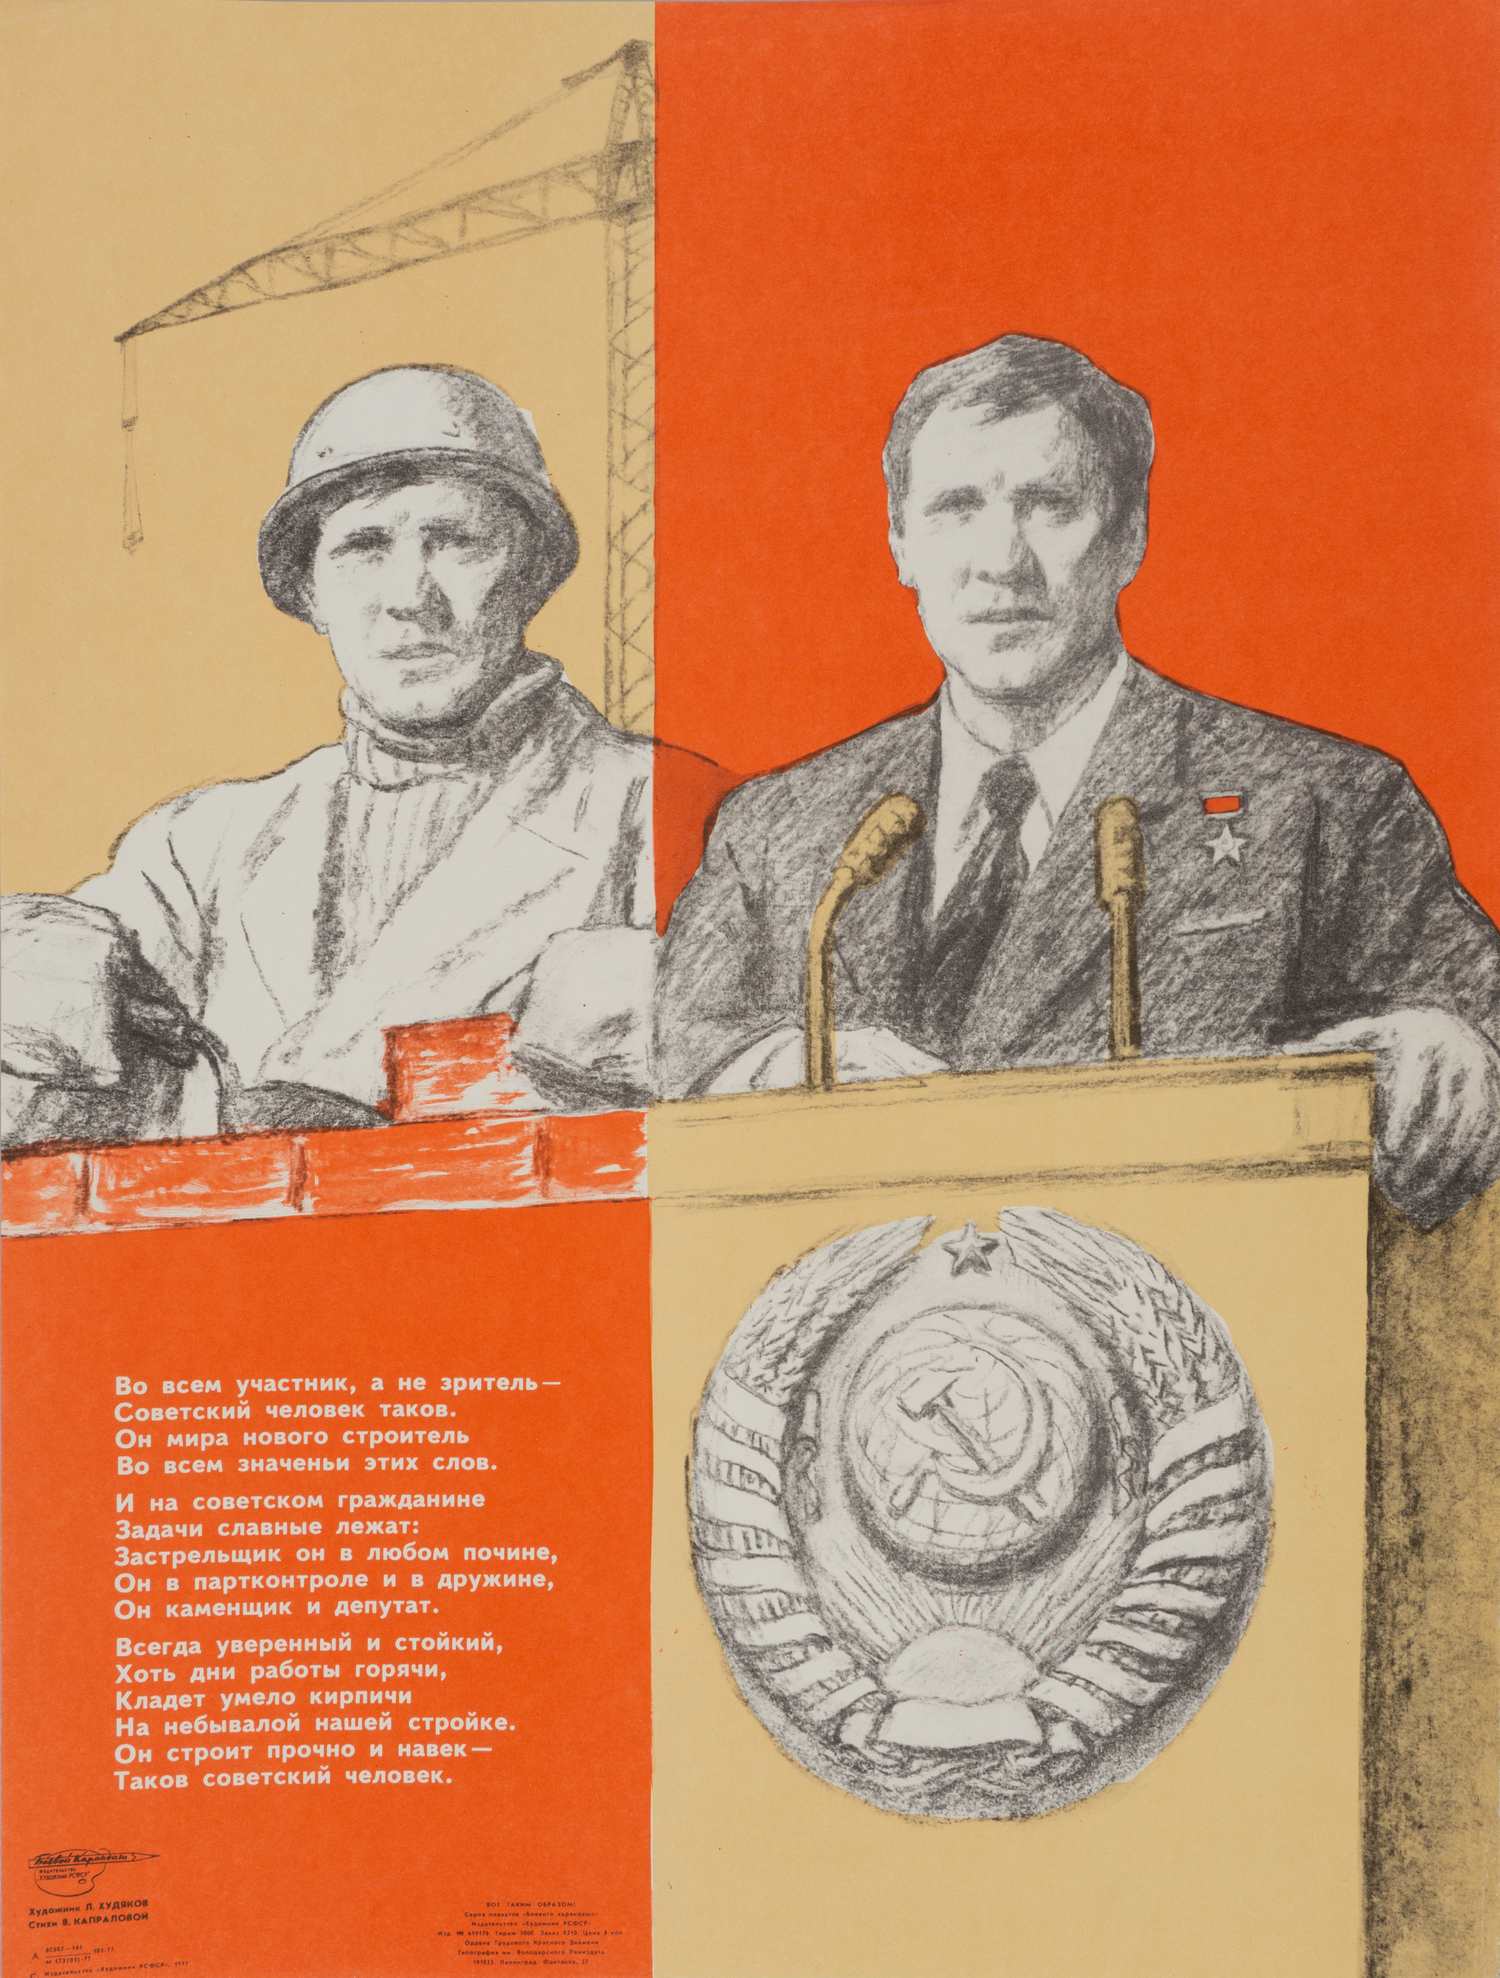 («Боевой карандаш«) Худяков Л. Плакат «Во всём участник, а не зритель...» (Л., 1977).